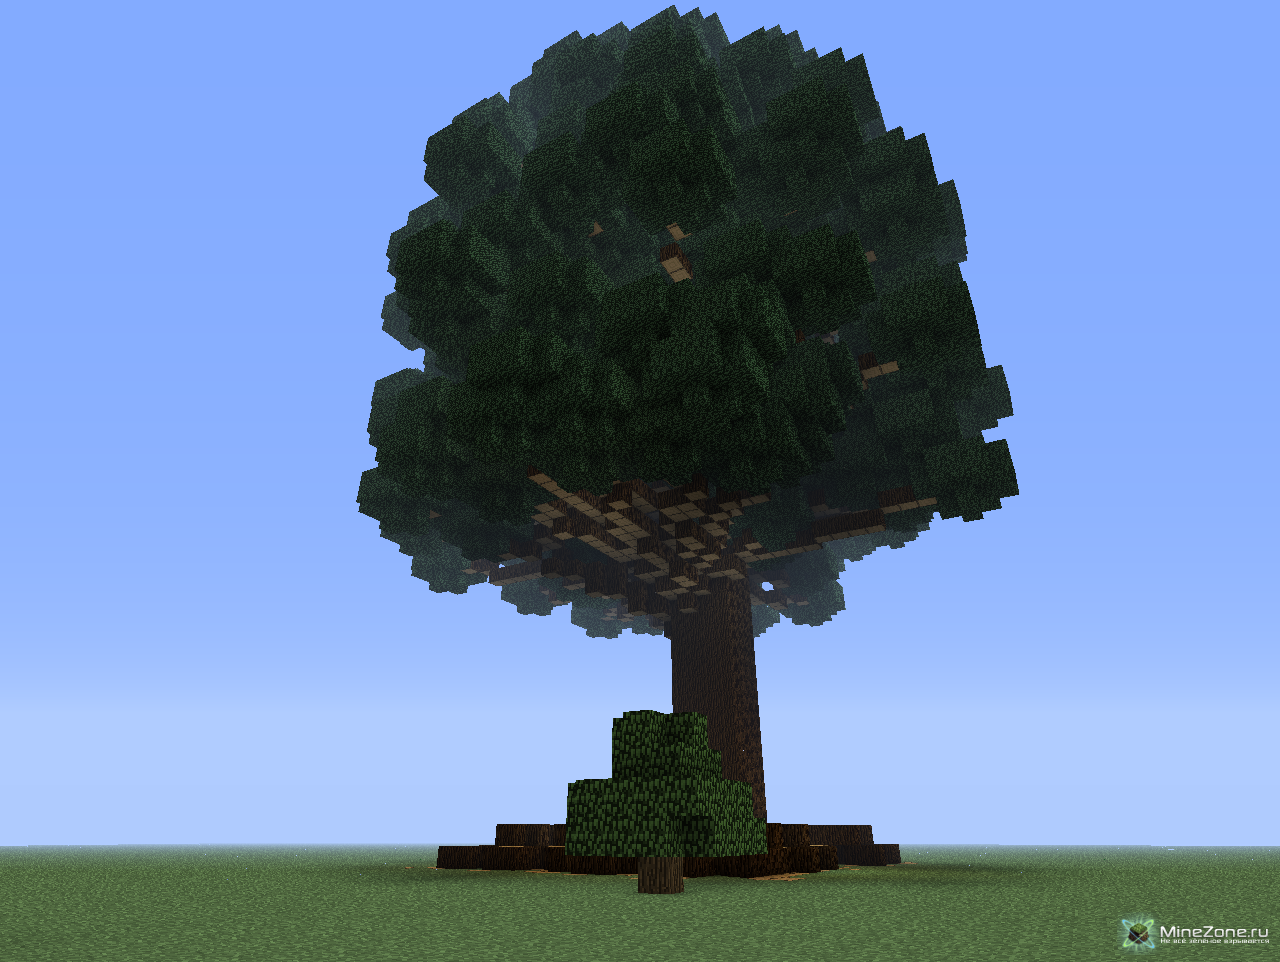 Огромное дерево майнкрафт. Гигантское дерево в МАЙНКРАФТЕ. Красивое дерево в МАЙНКРАФТЕ. Огромное дерево в МАЙНКРАФТЕ. Дерево в МАЙНКРАФТЕ постройка.